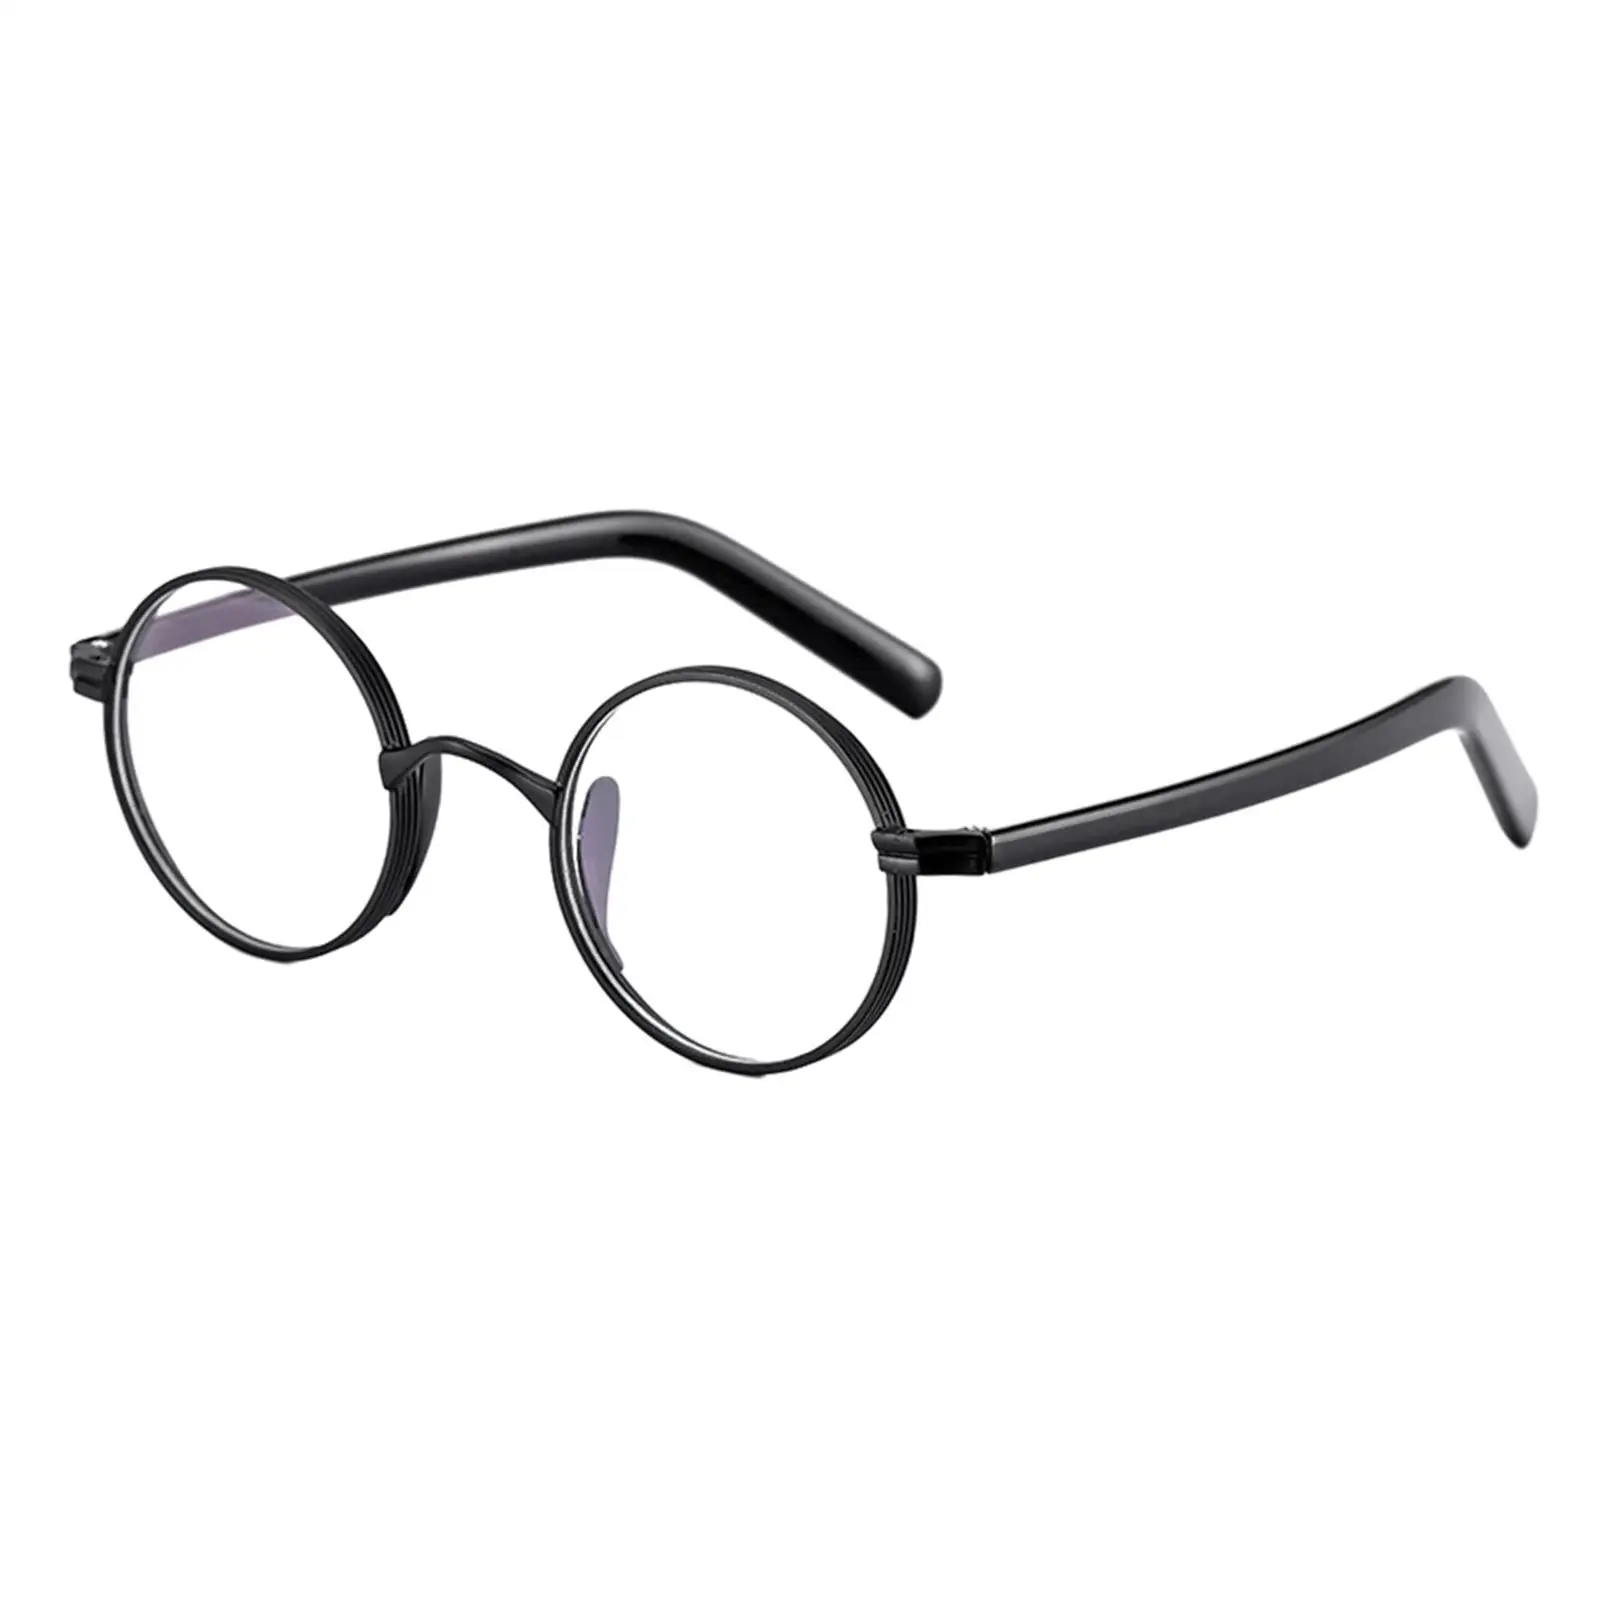 Glasses Frames Oversize Comfortable to Wear for Women Men Titanium Alloy Lightweight Eyewear Frames Eyeglasses Frames